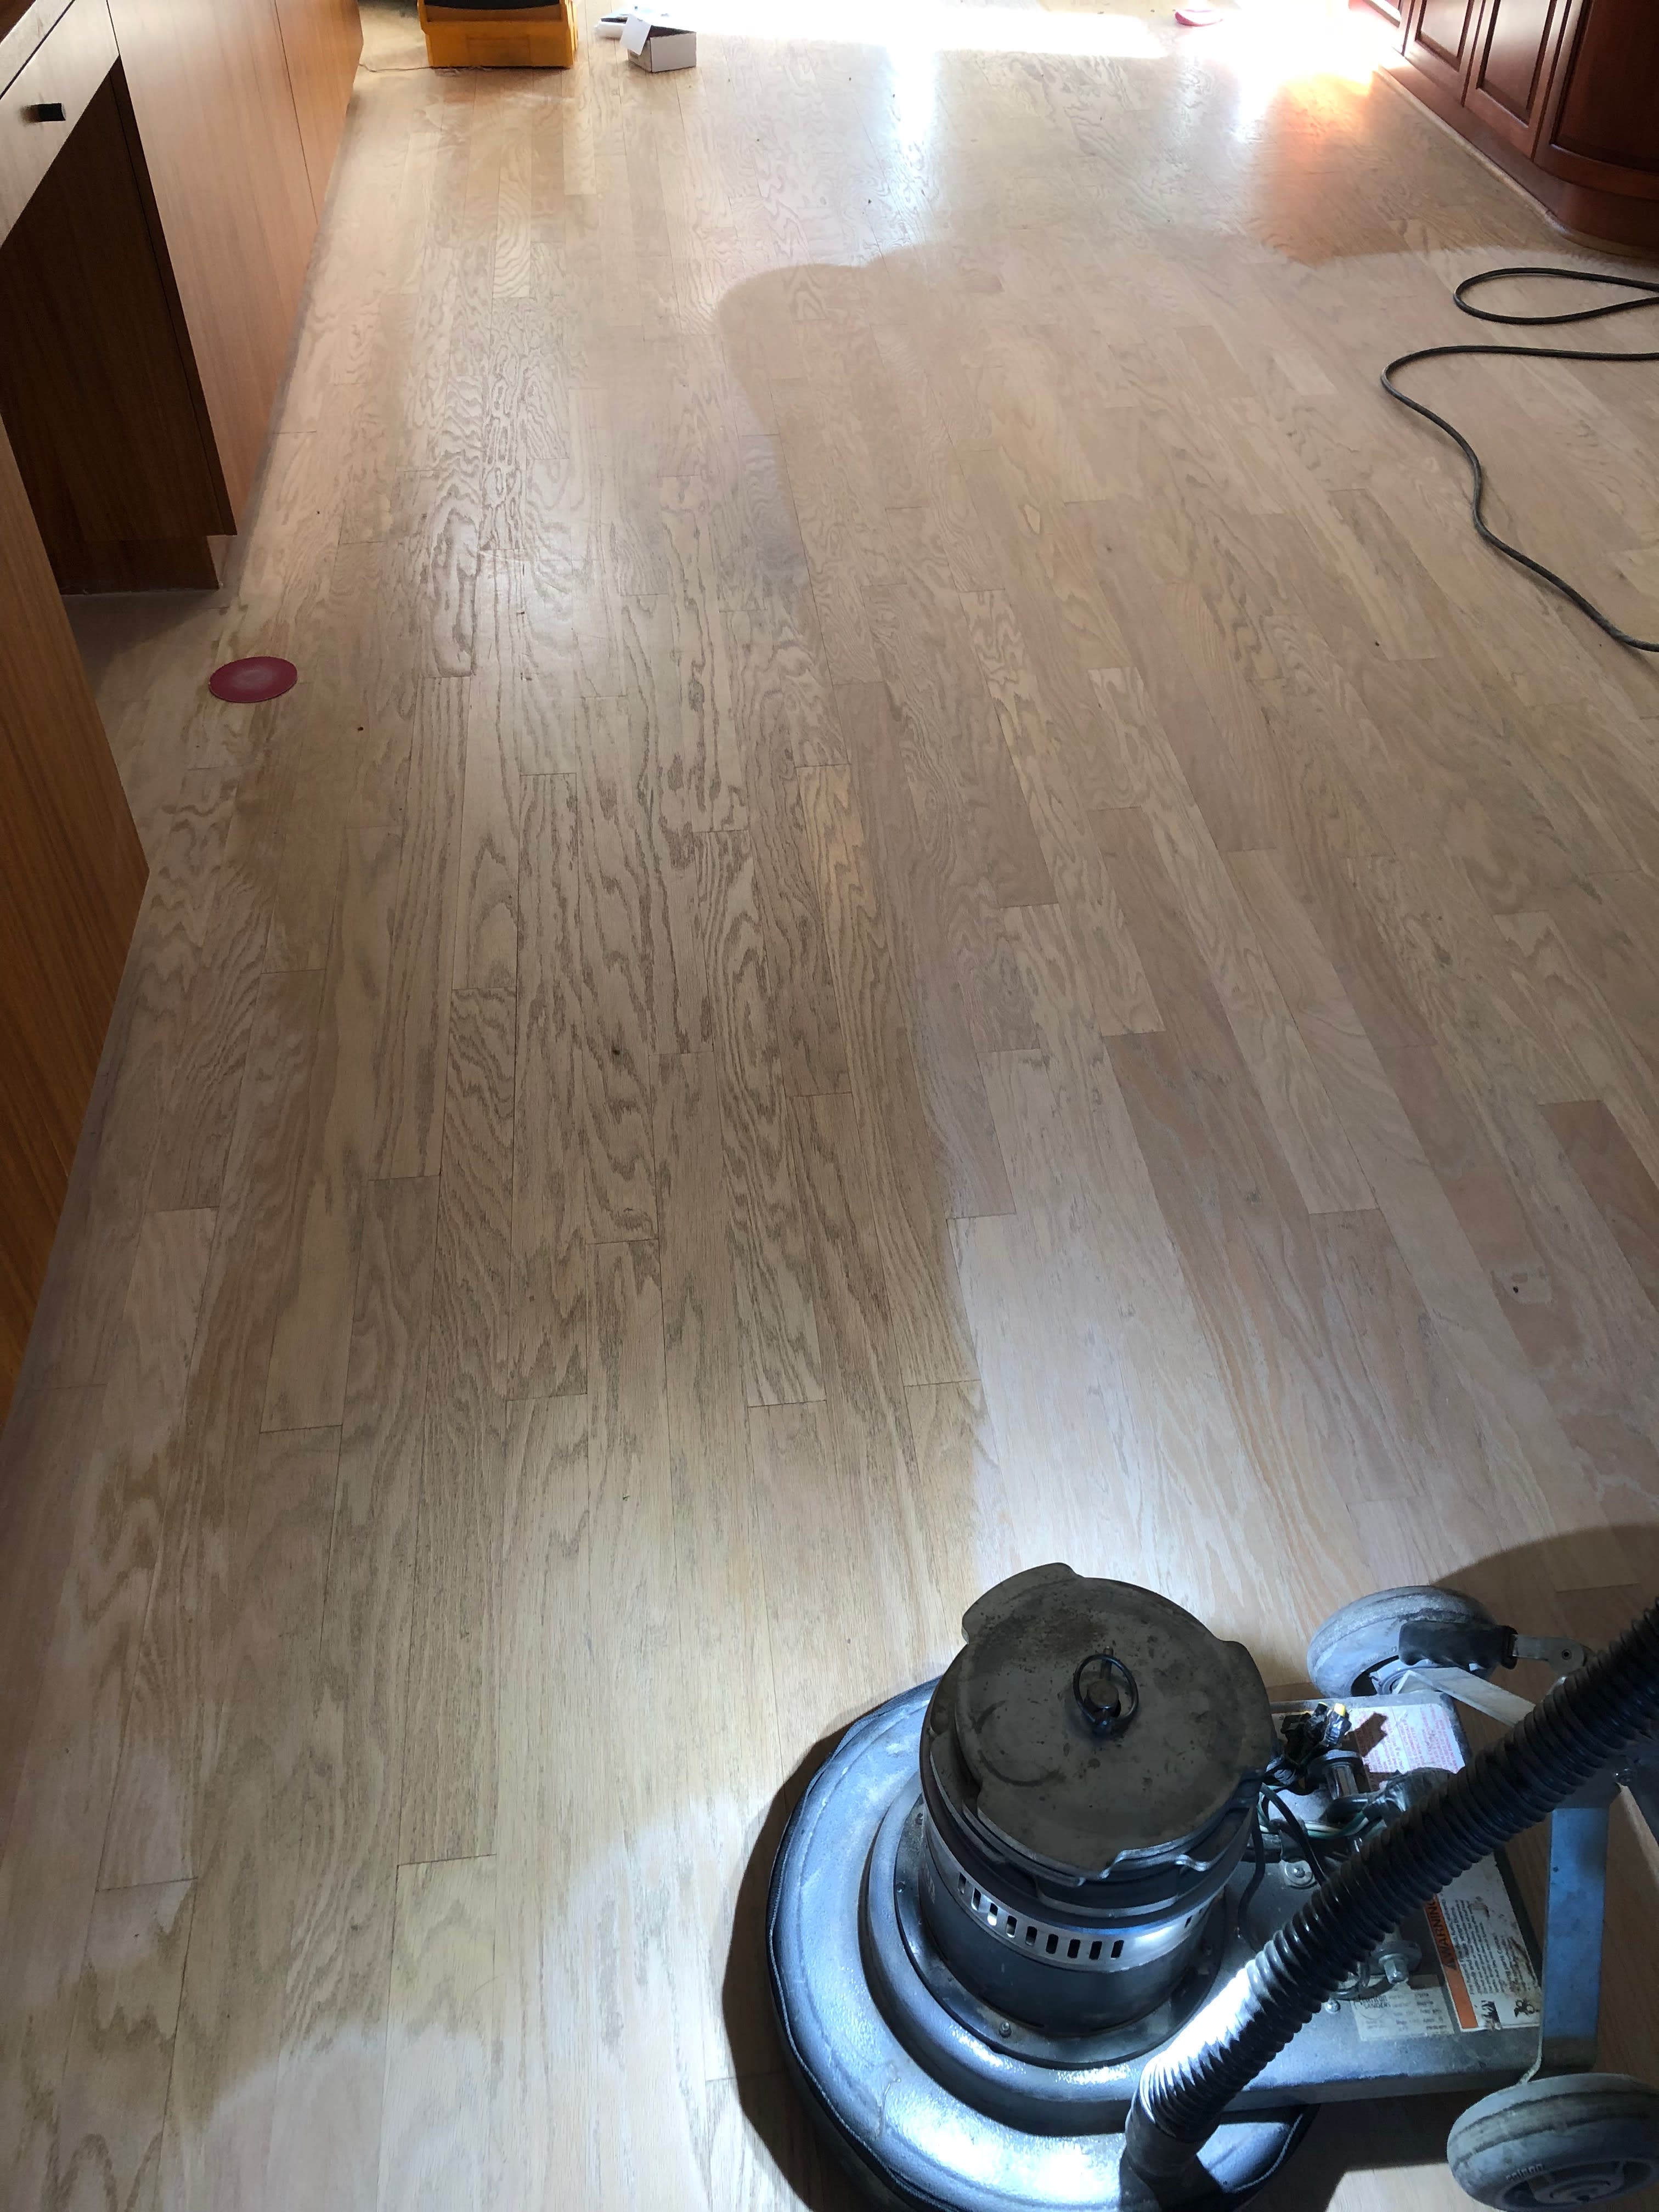 Cds Hardwood Floors Floorer Damascus, Tile Vs Wood Flooring Reddit